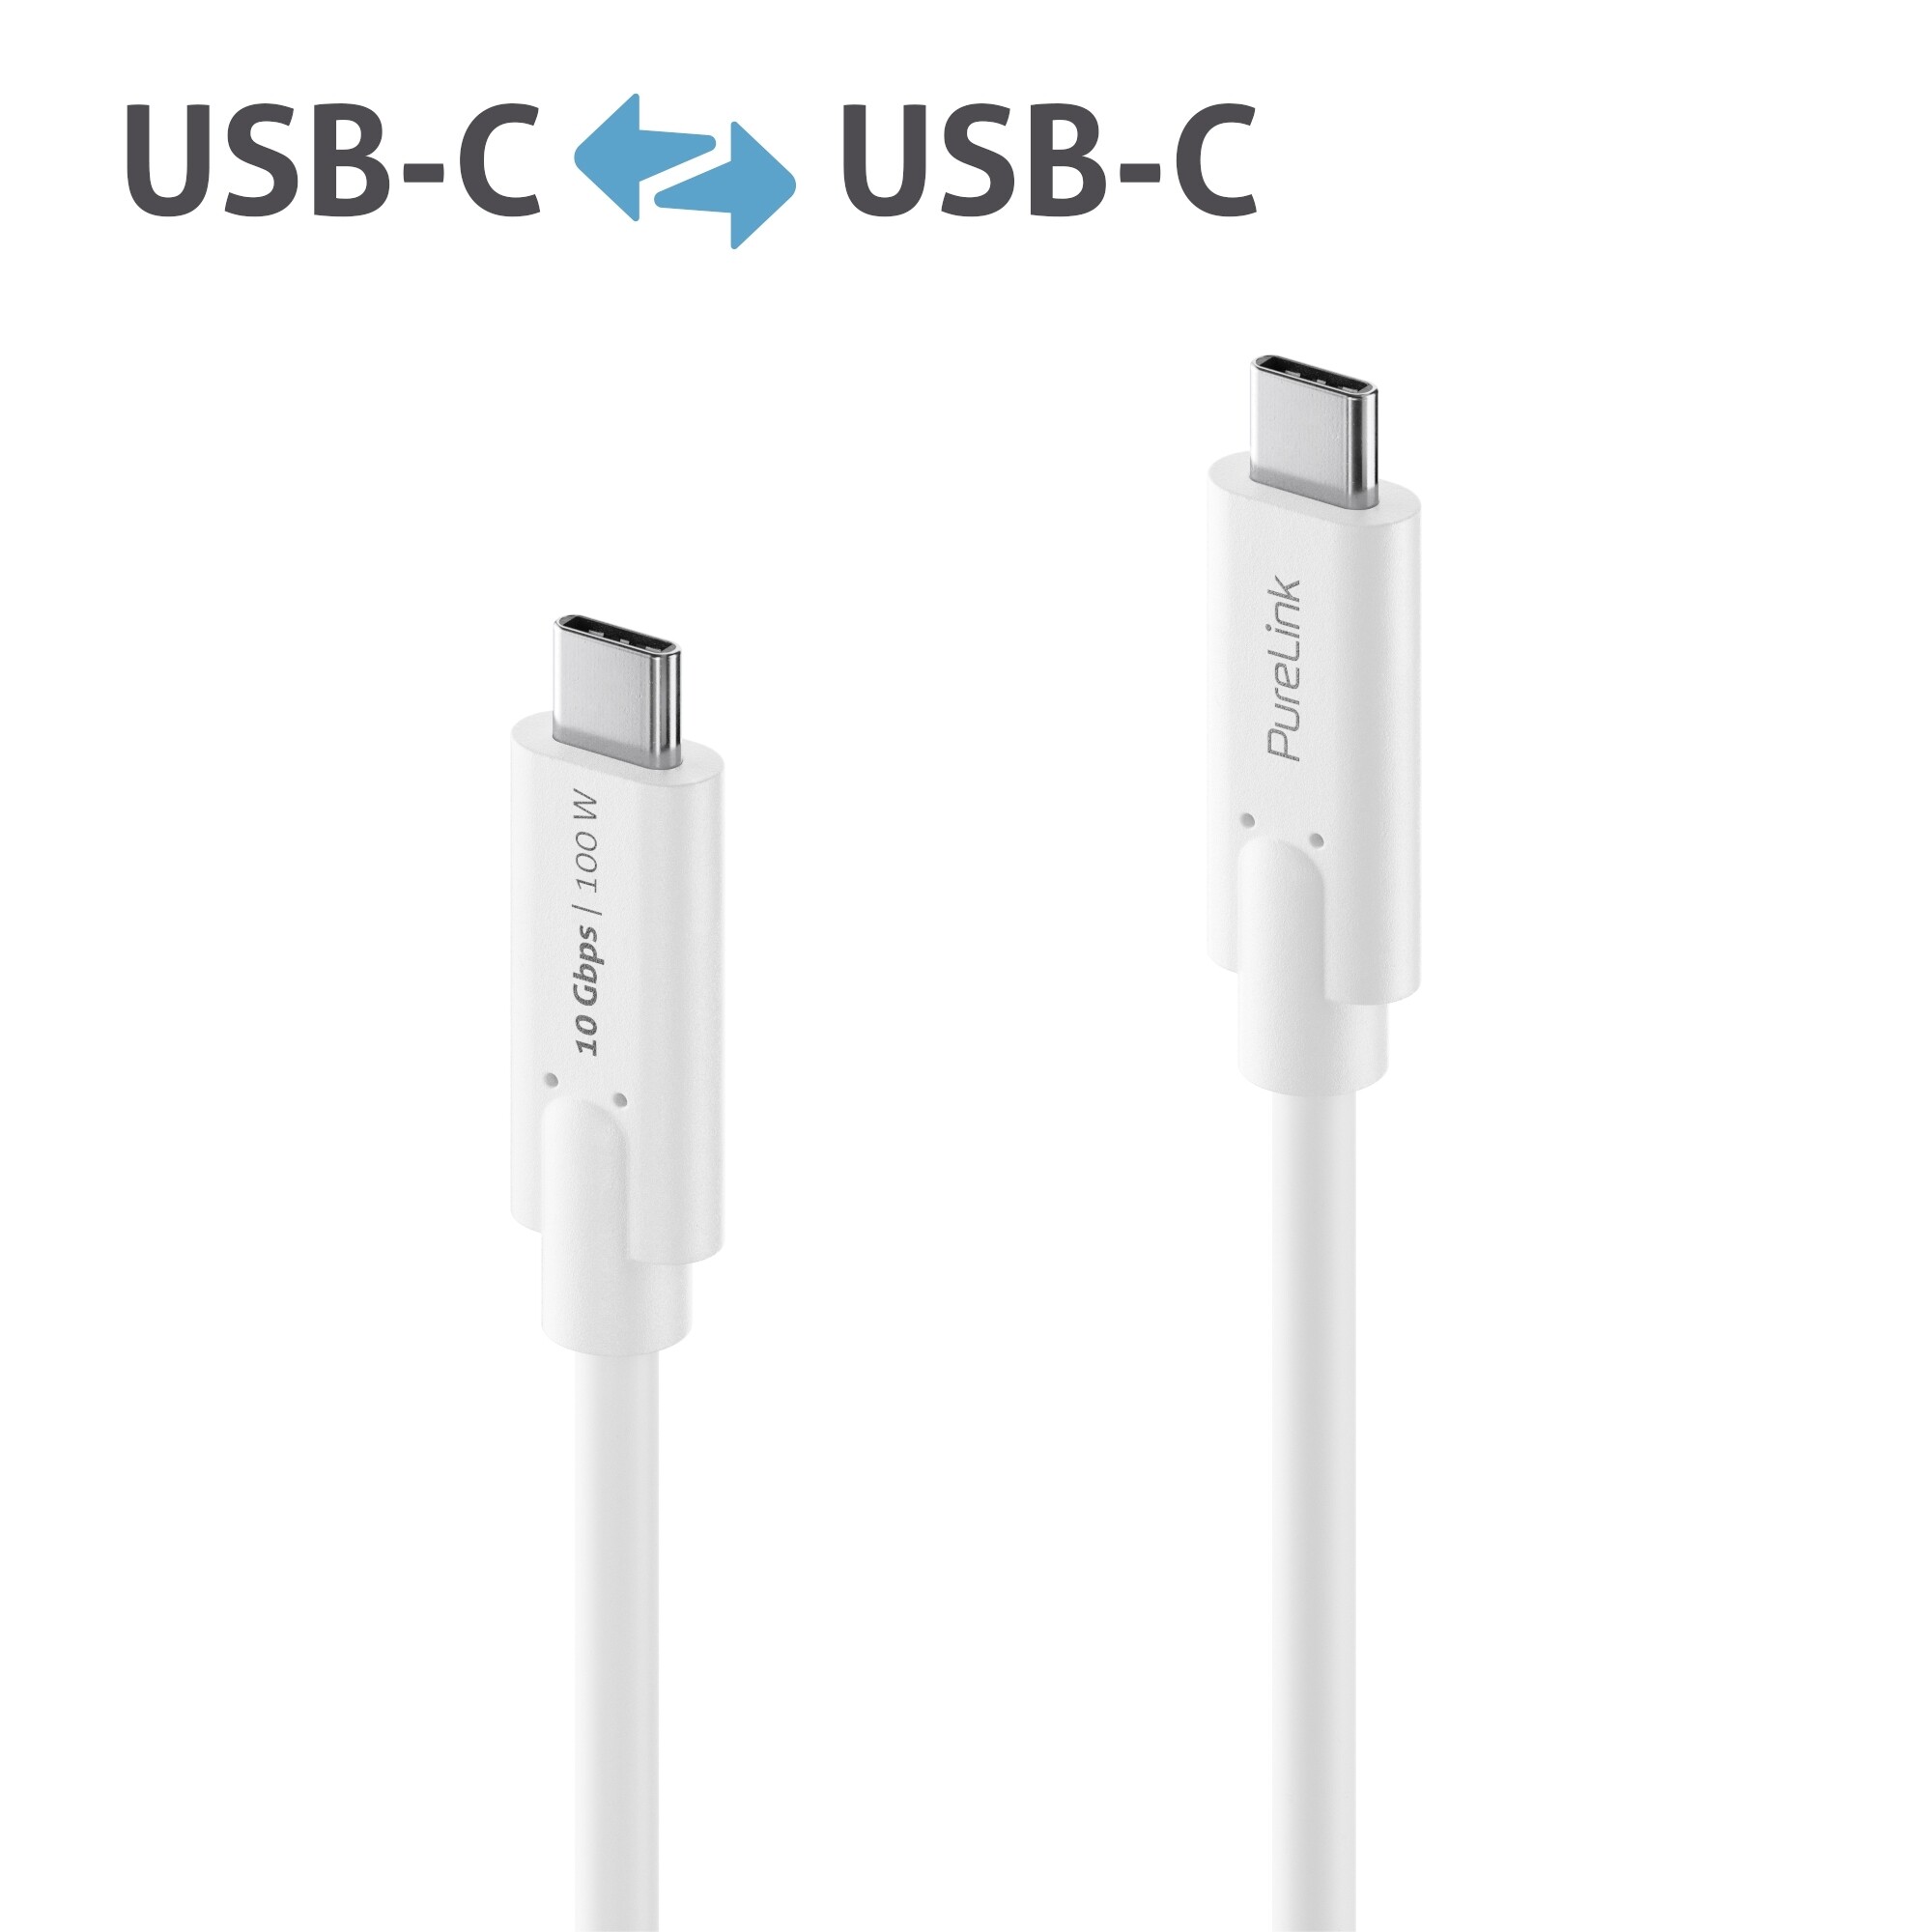 Purelink-IS2510-005-USB-C-auf-USB-C-Gen-2-Kabel-0-5m-weiss